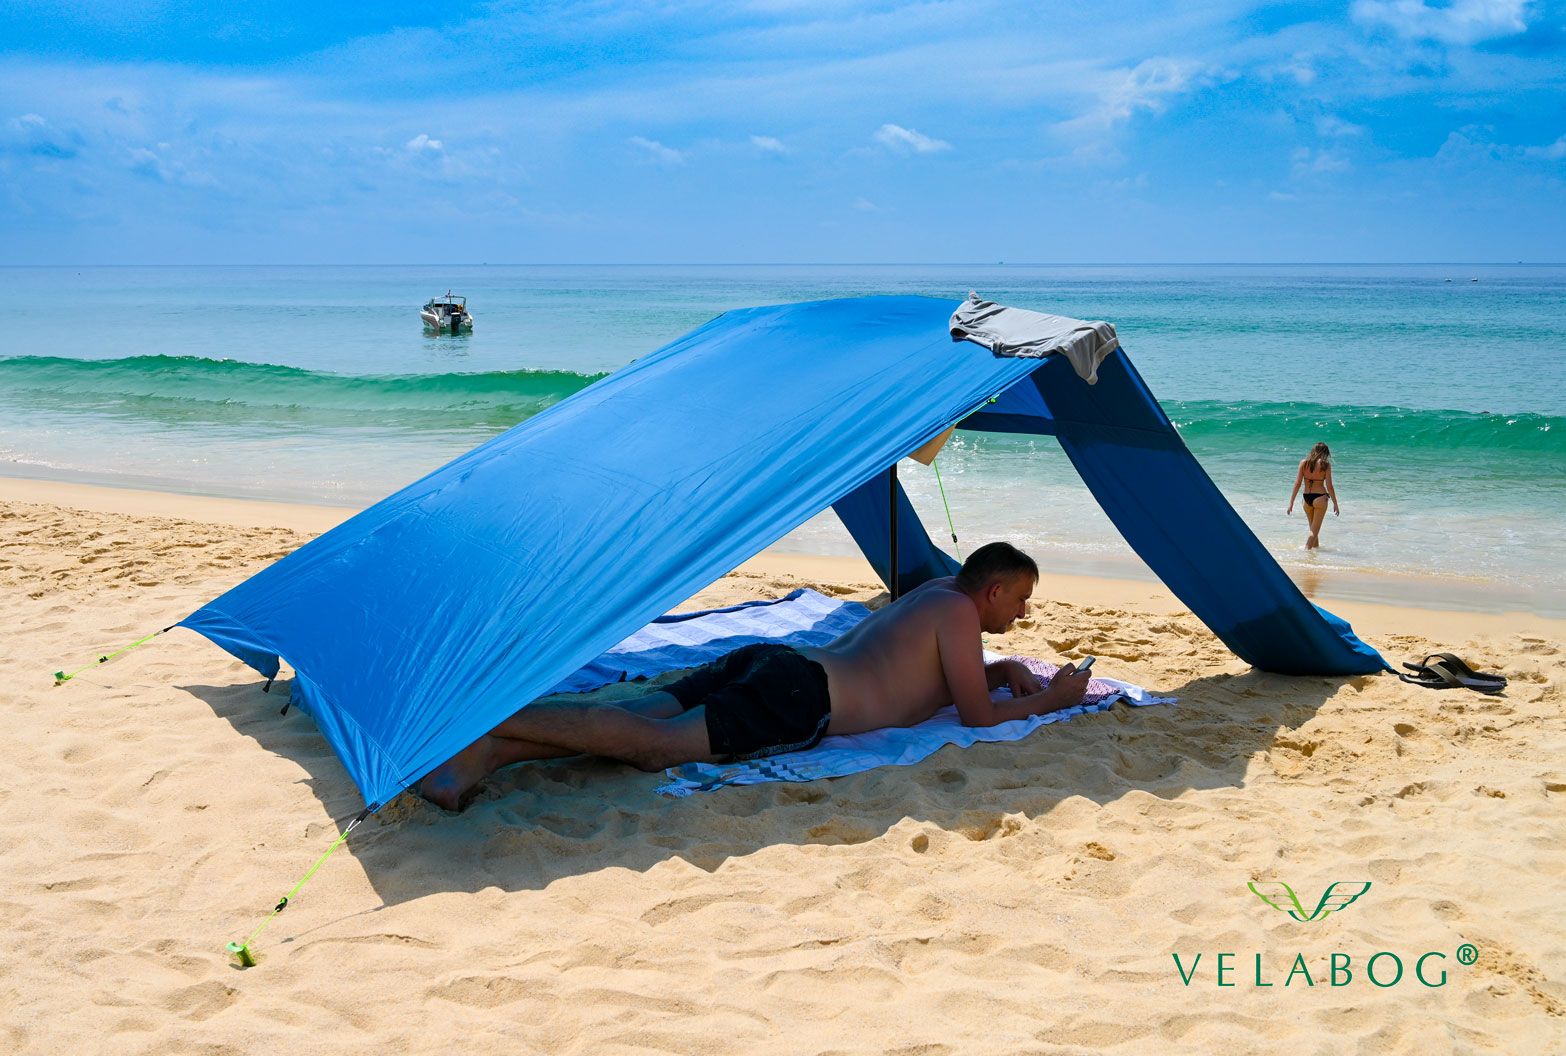 Voile d’ombrage tente plage Velabog Breeze, bleu. Protection anti-UV bien aérée sur la plage, même quand il n’y a pas de vent. Le meilleur auvent de plage. Option de montage - pas de vent, vent faible ou vent en rafales. Vue de côté. Personnes.